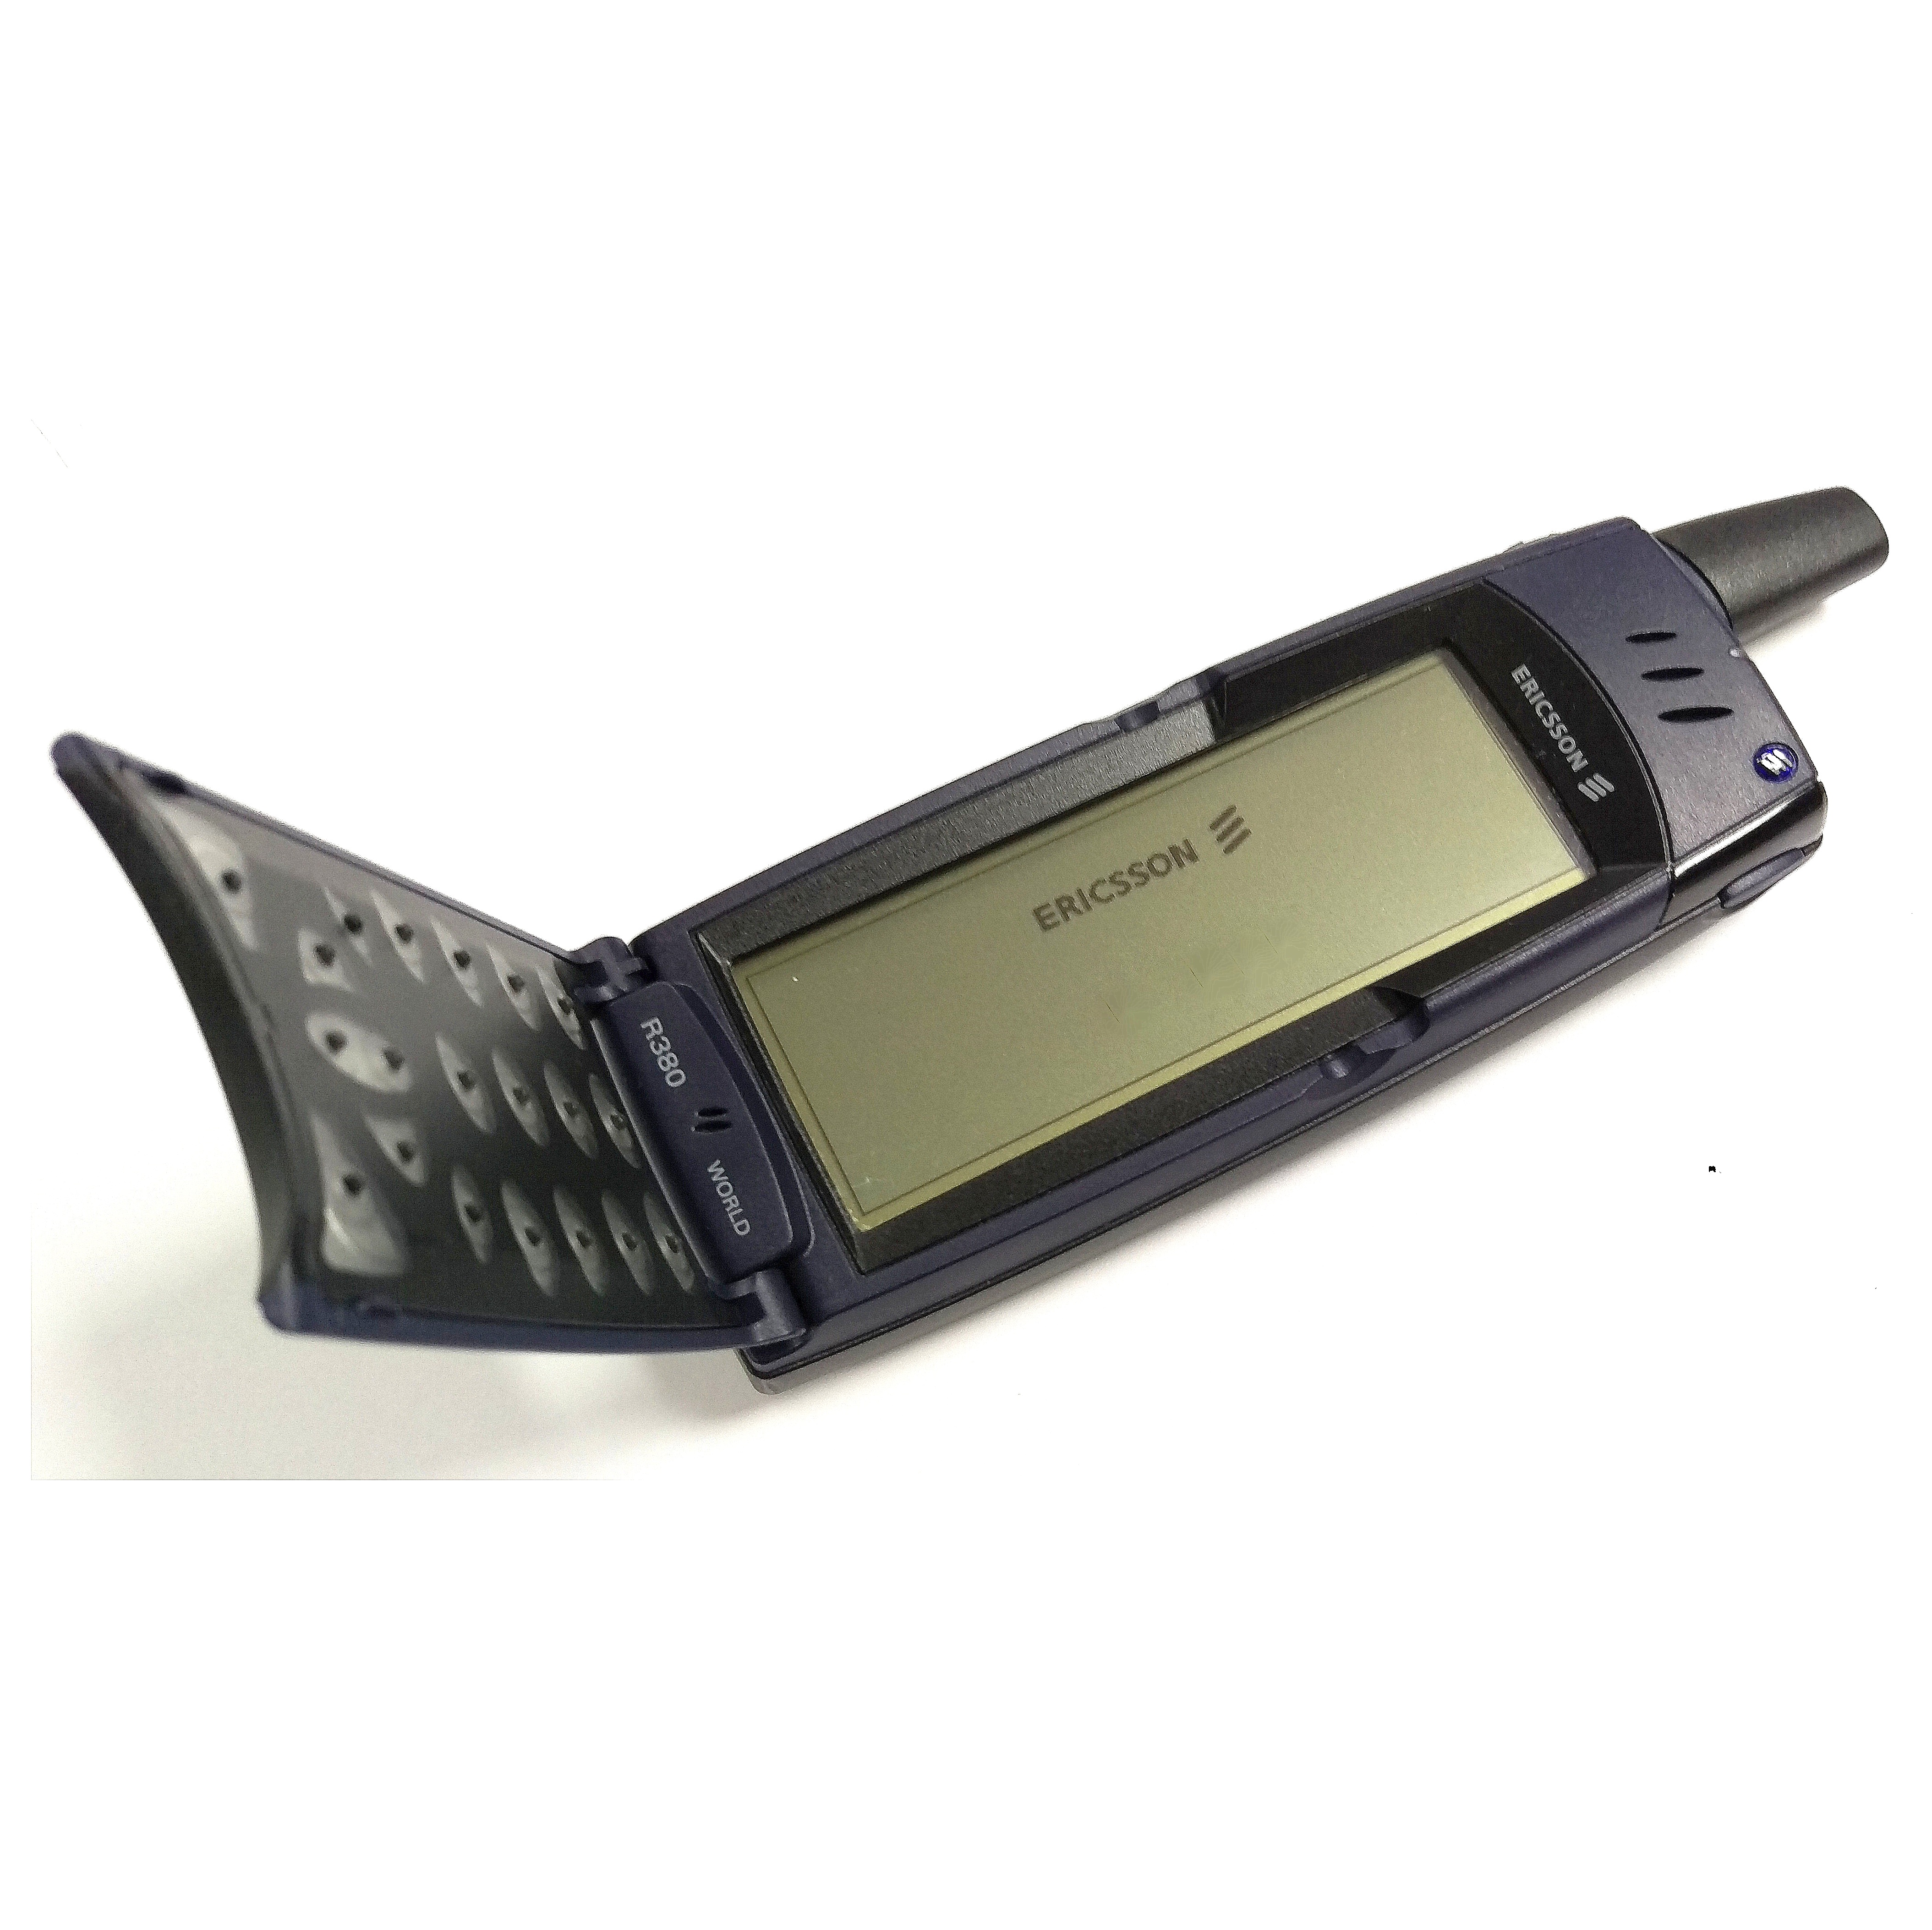 Ericsson r380 (2000)